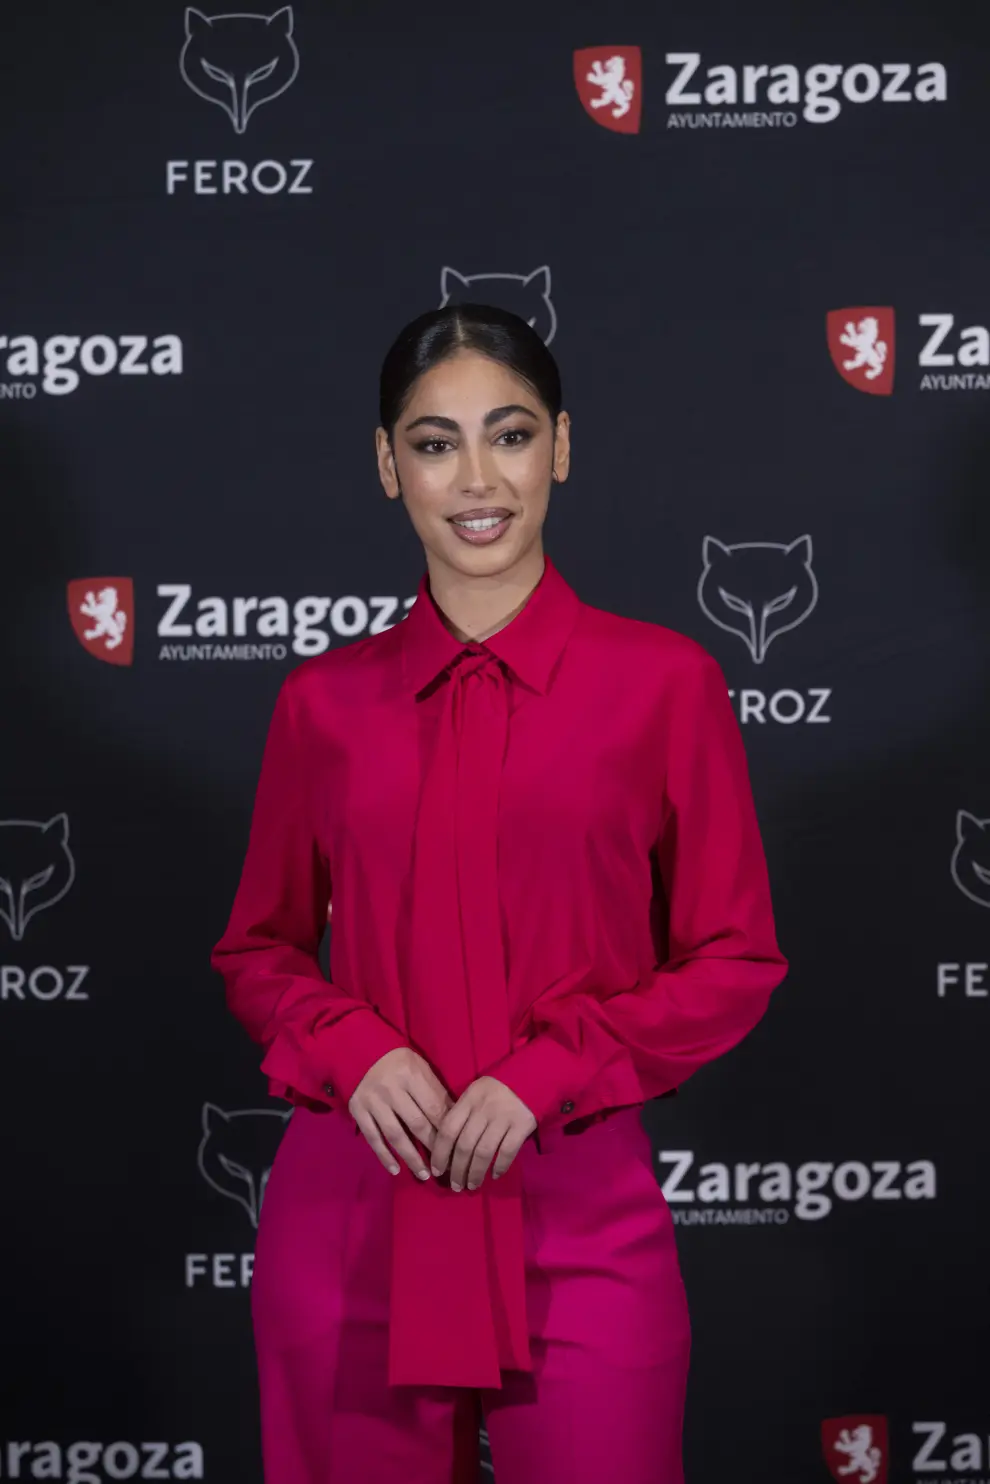 Fotos del anuncio de los candidatos a los Premios Feroz esta mañana en Zaragoza.